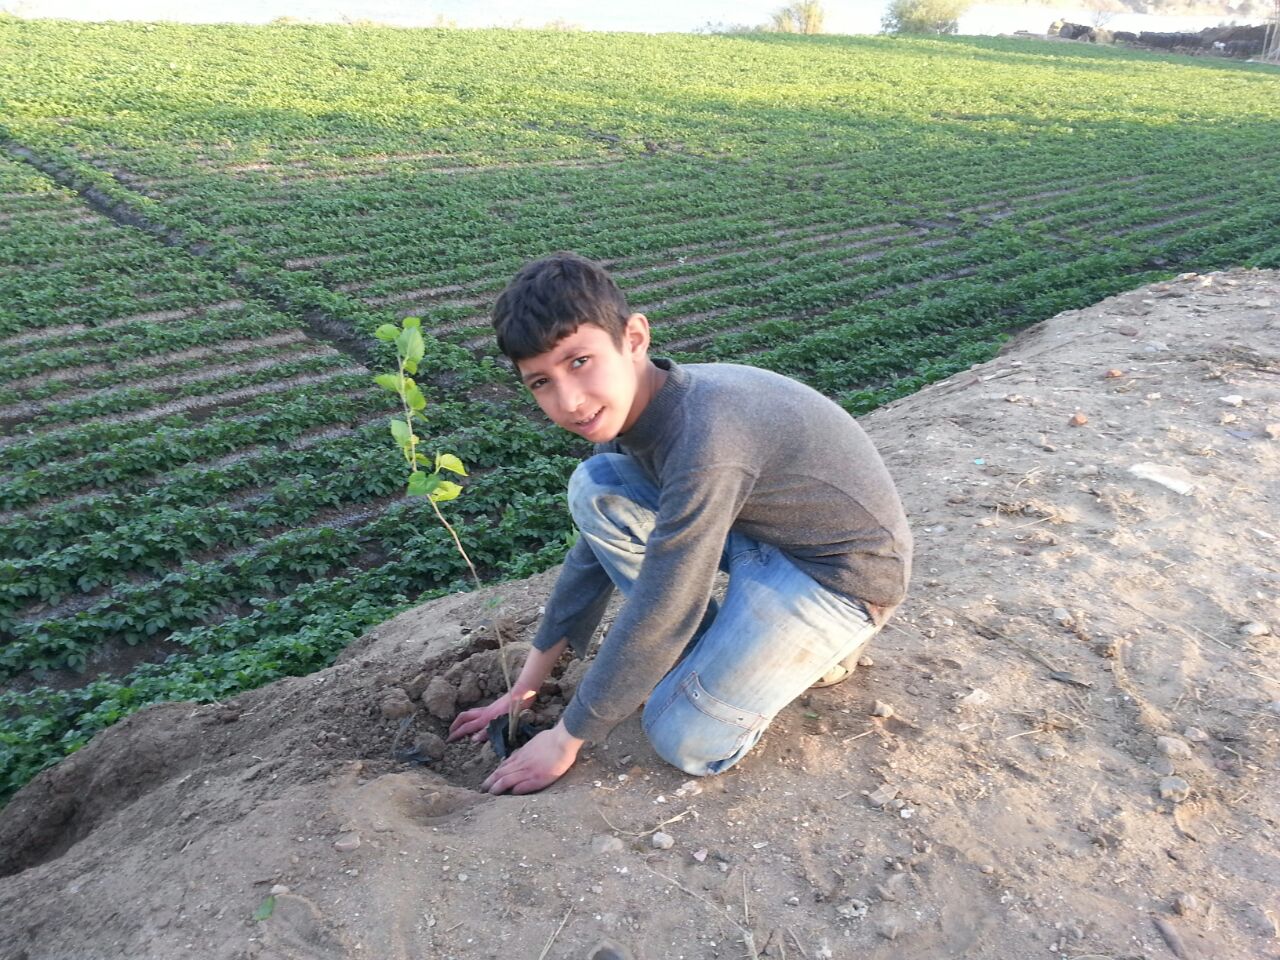 طفل يزرع شجرة